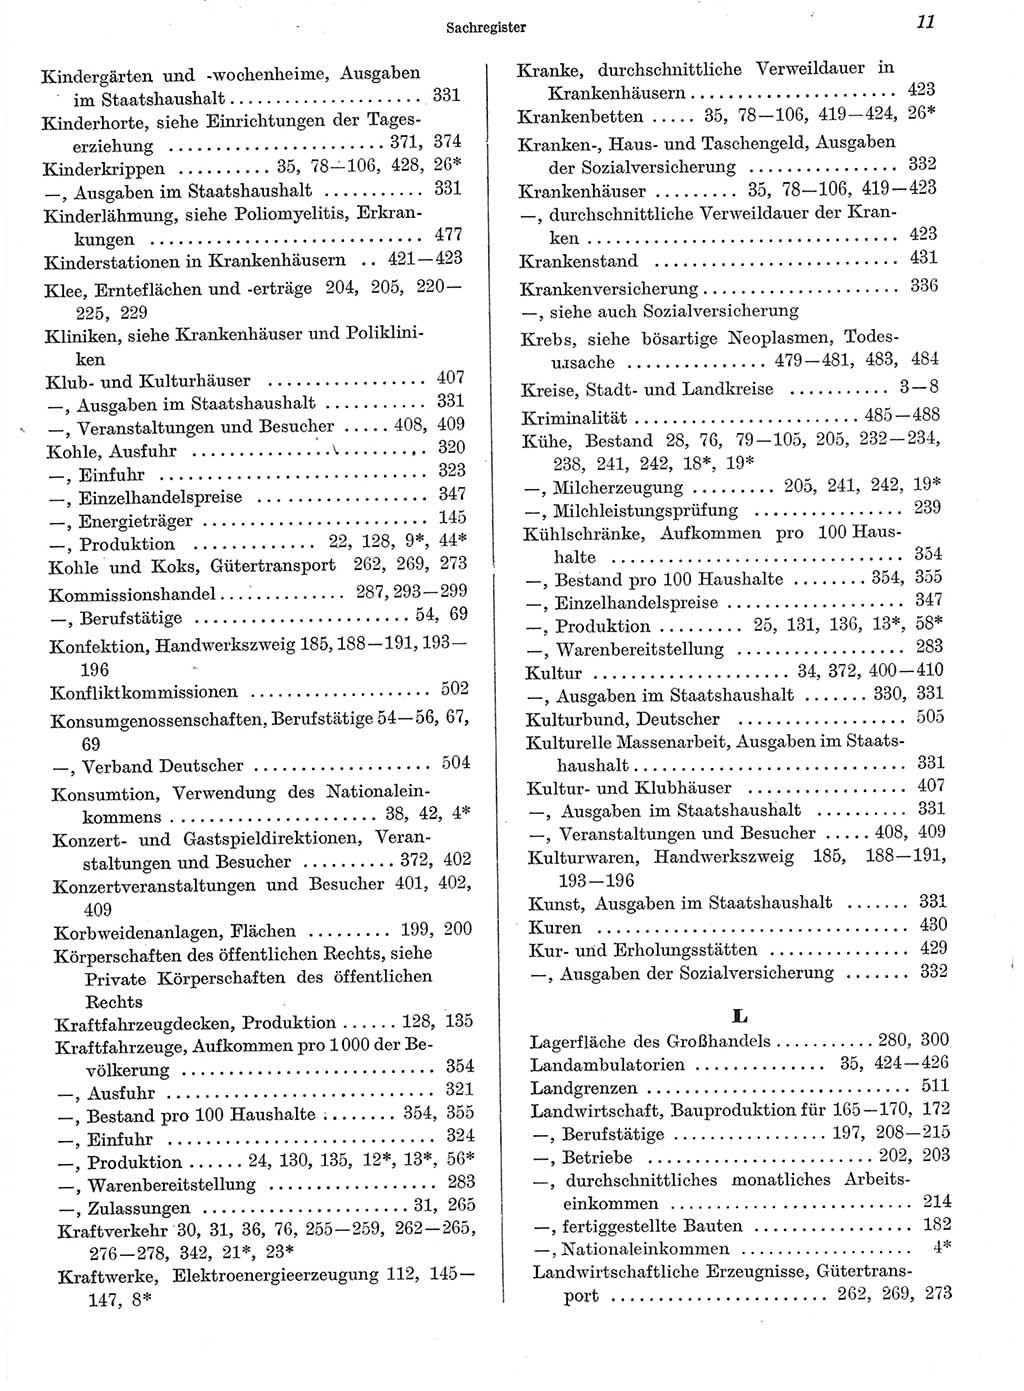 Statistisches Jahrbuch der Deutschen Demokratischen Republik (DDR) 1972, Seite 11 (Stat. Jb. DDR 1972, S. 11)